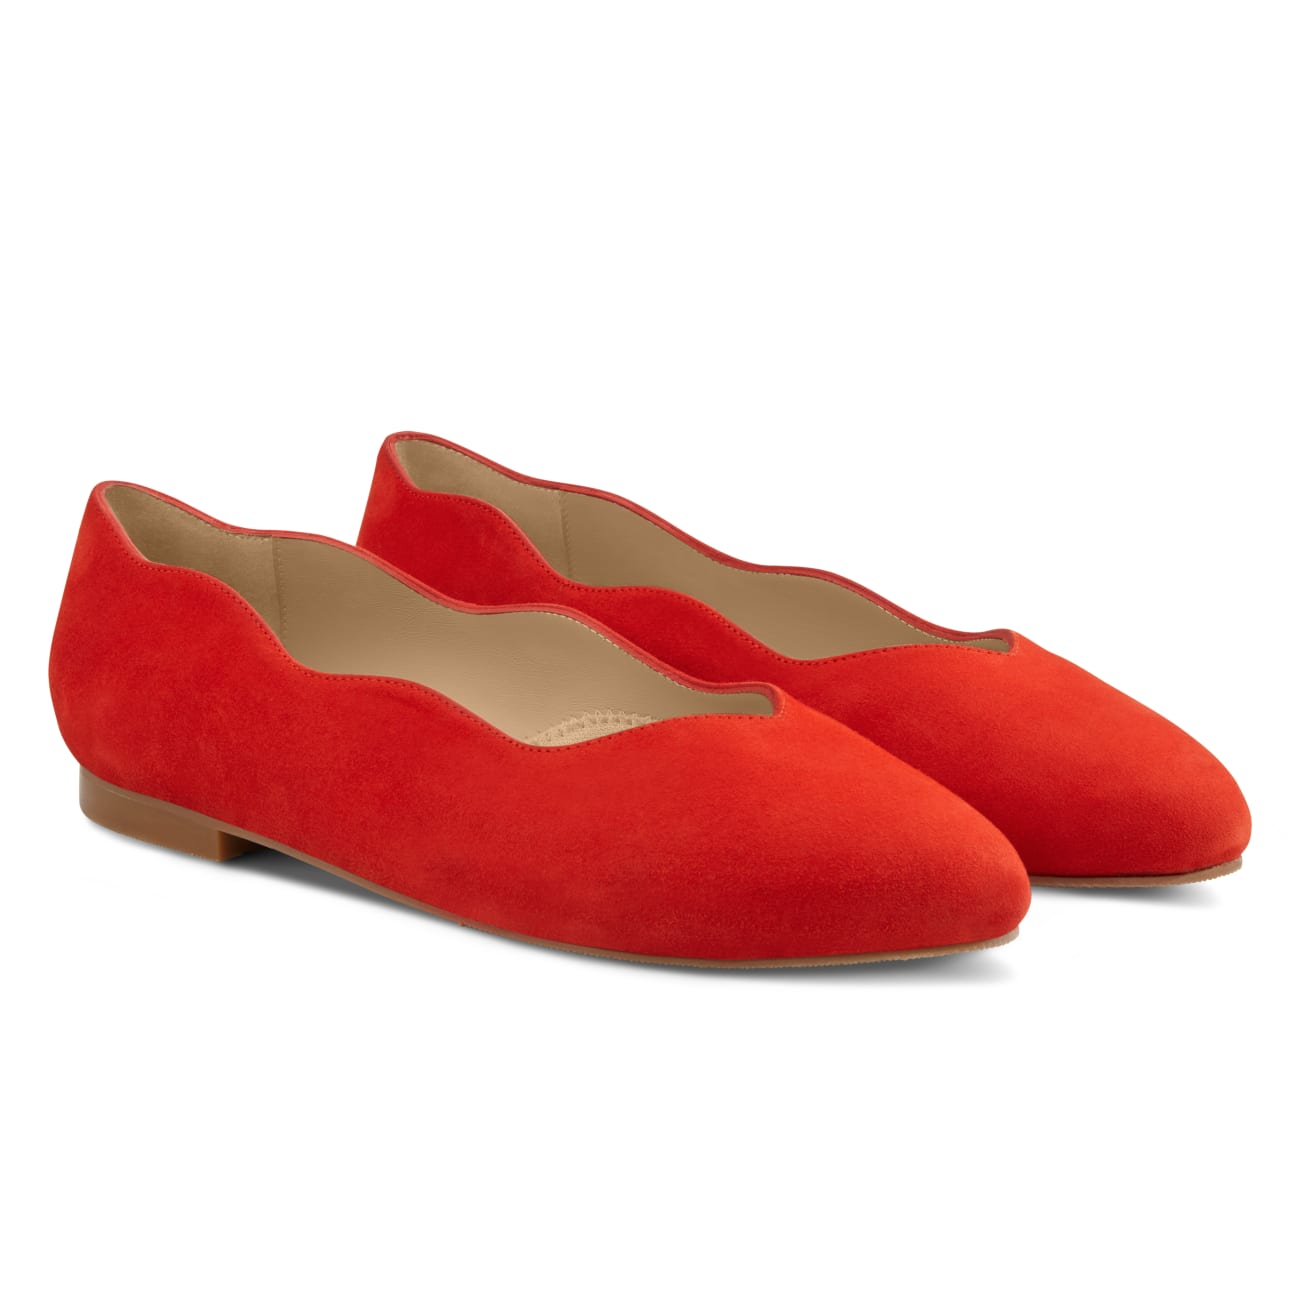 Ballerina Wave Rot – modischer und bequemer Schuh für Hallux valgus und empfindliche Füße von LaShoe.de